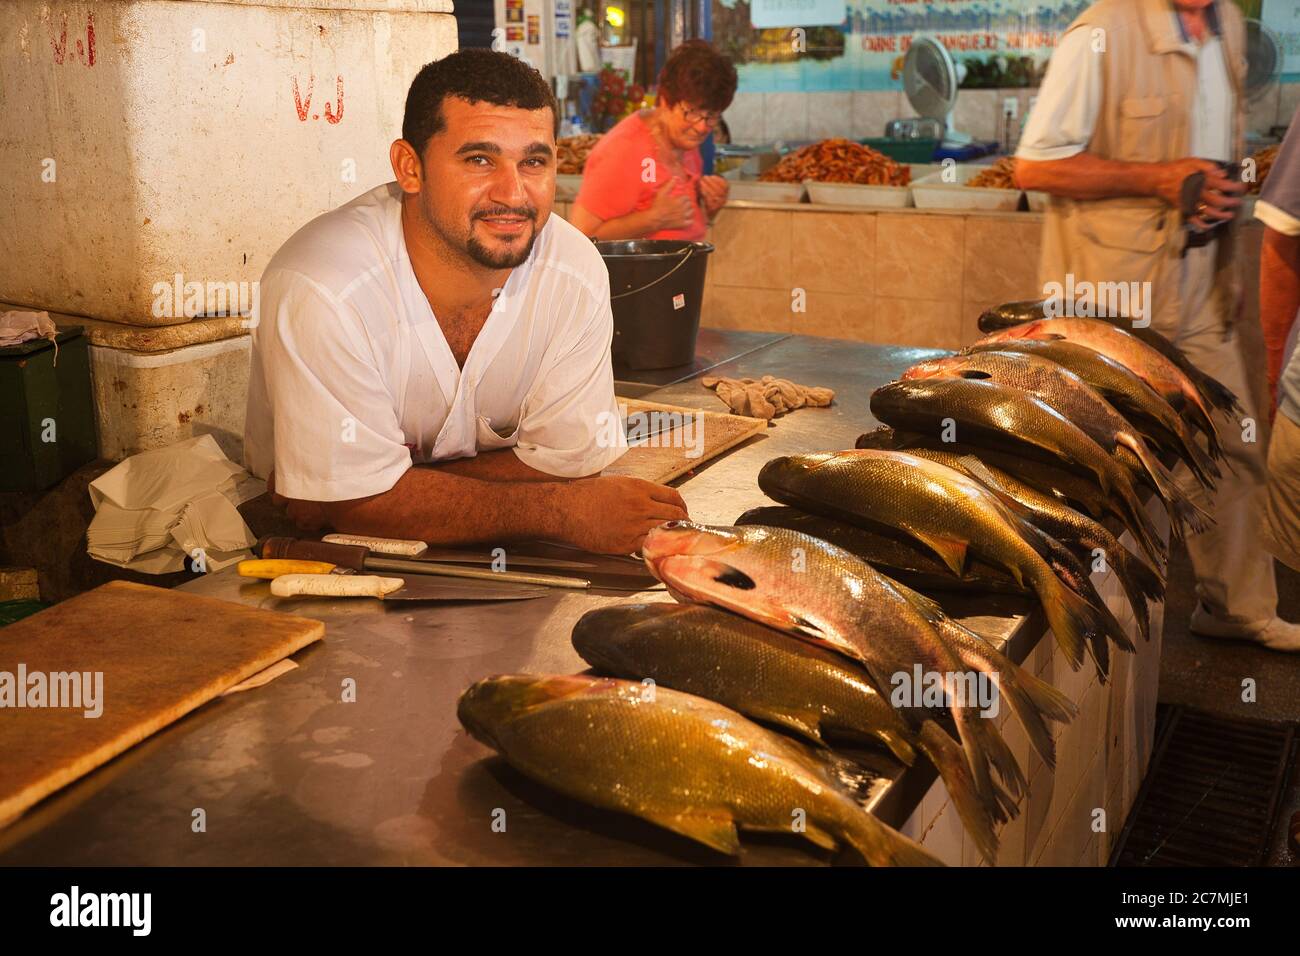 Un homme à sa stalle dans le marché avec du poisson pêché frais, s'inclinant sur le comptoir et regardant la caméra, à Manaus, dans l'État d'Amazonas, au Brésil Banque D'Images